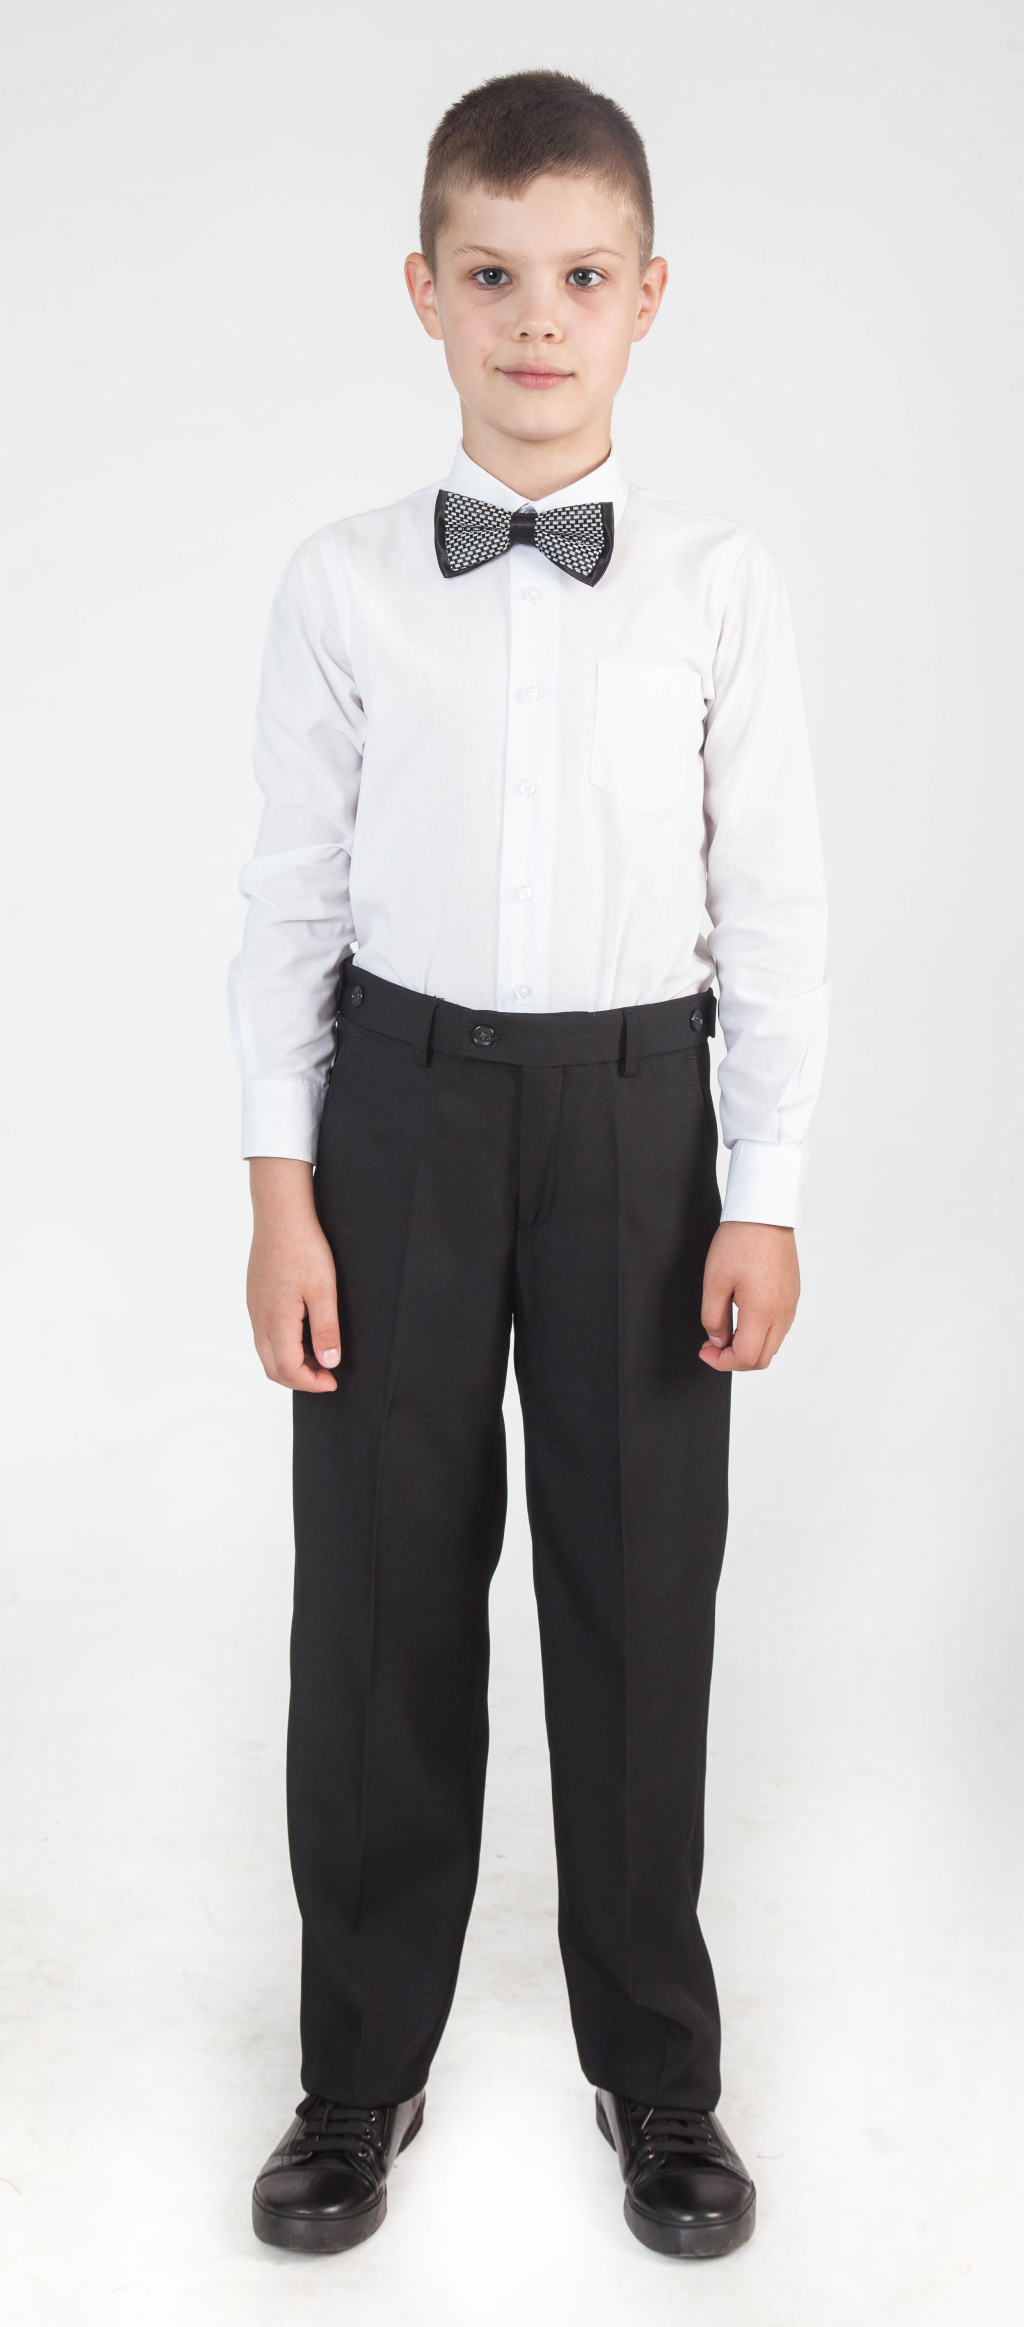 Школьные брюки на резинке для мальчика купить недорого в Москве -интернет-магазин «Мир брюк»